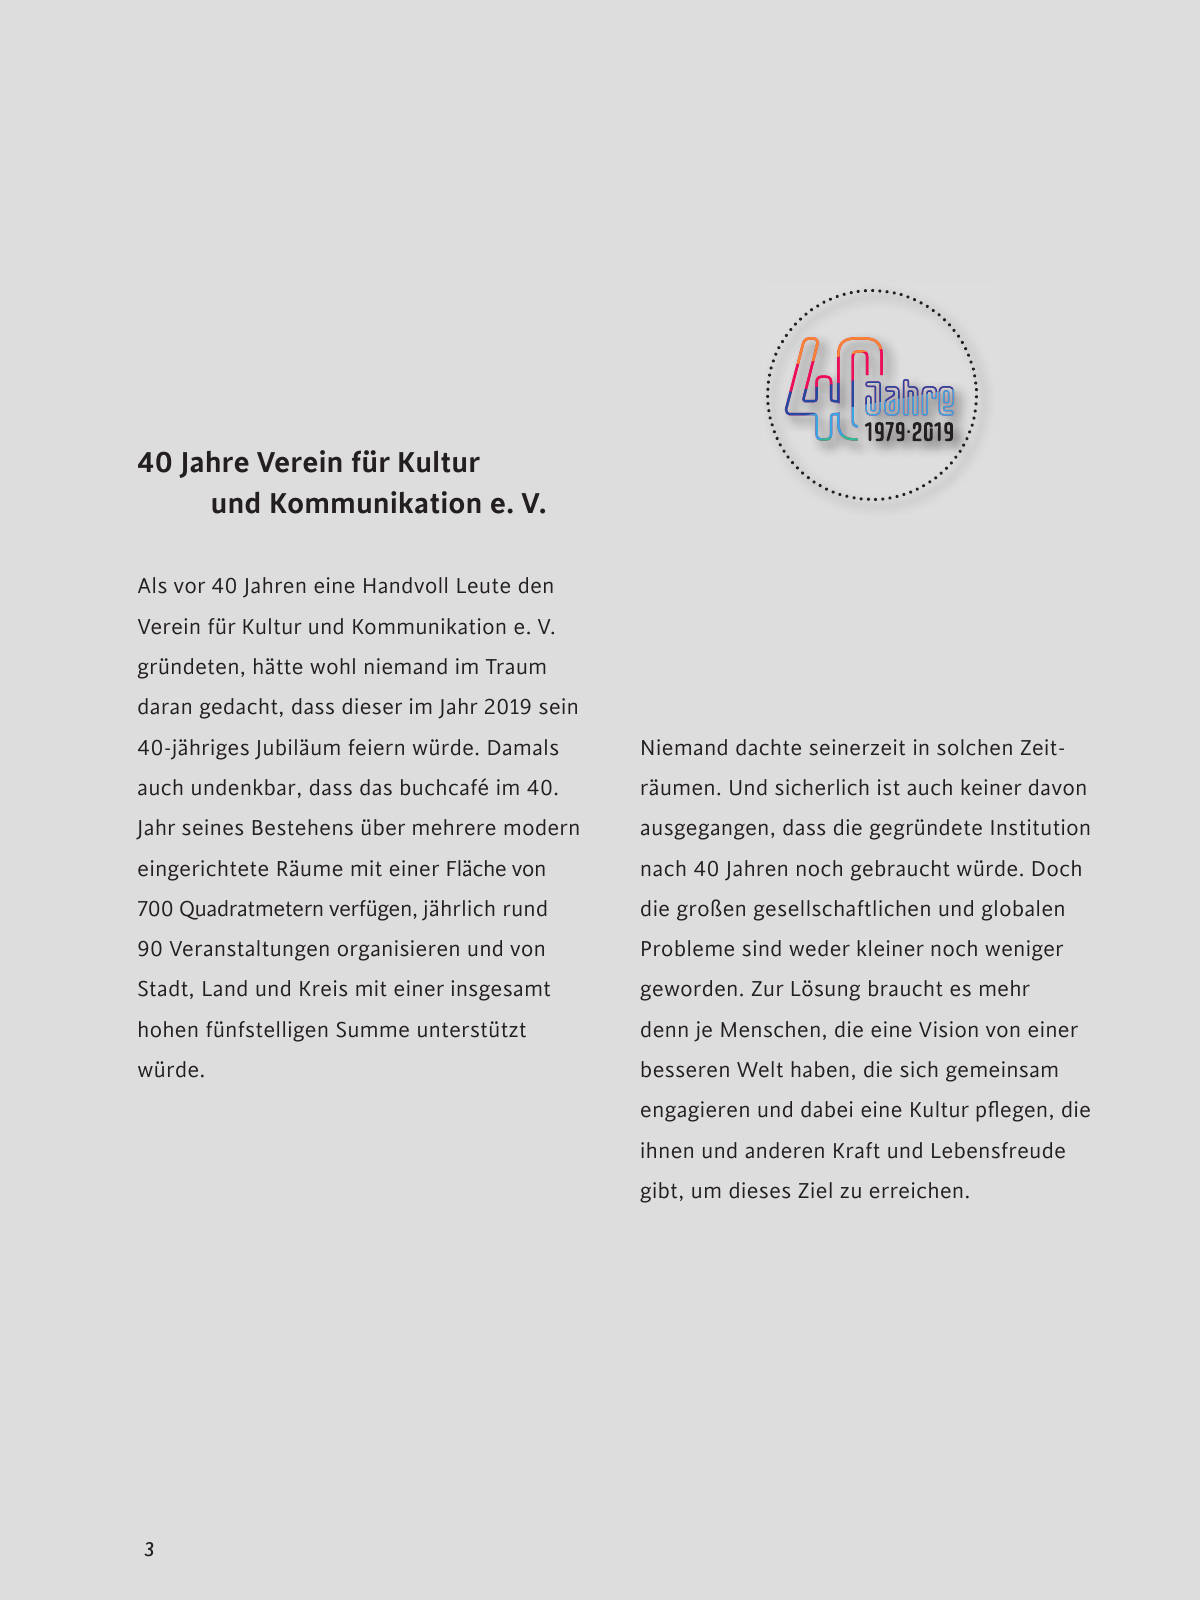 Vorschau buchcafe Festschrift 2019 Seite 3